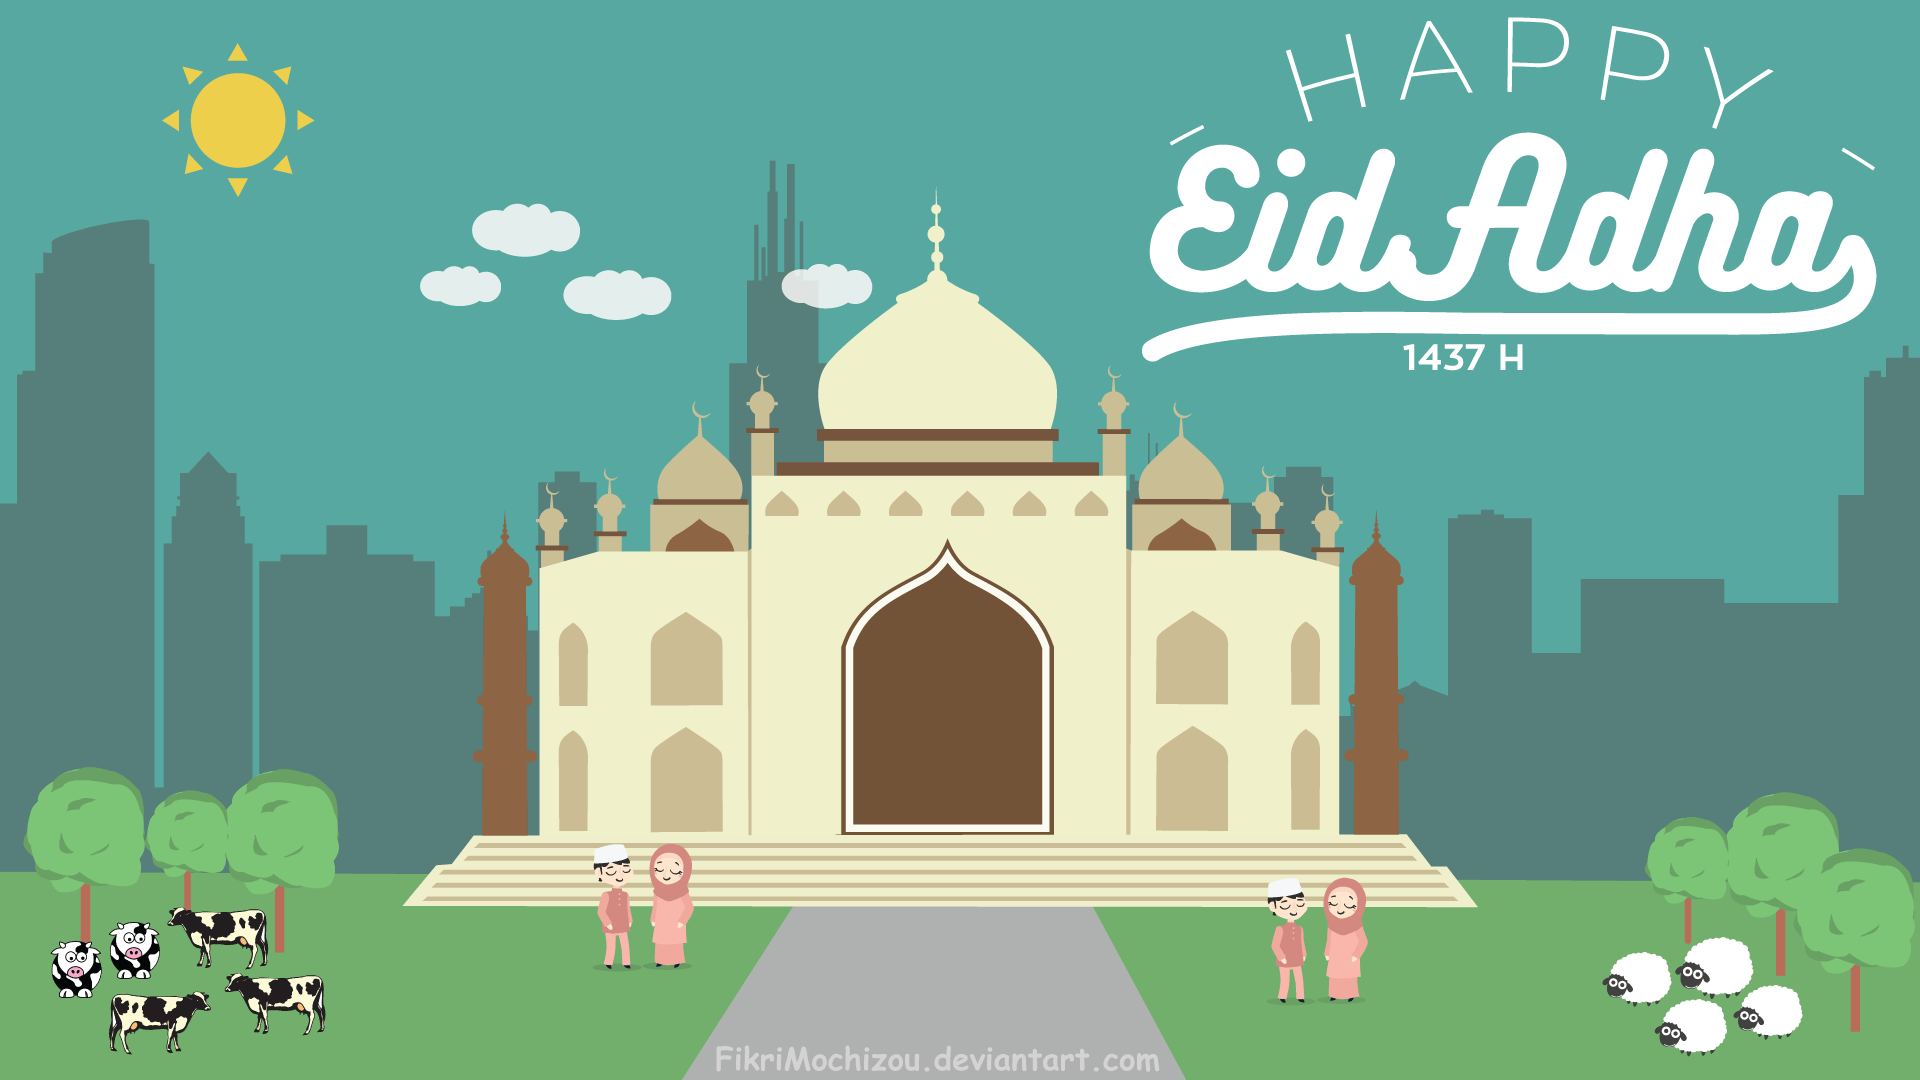 Happy Eid-ul-Azha ( Muslim festival ) by Muhammad FIkri